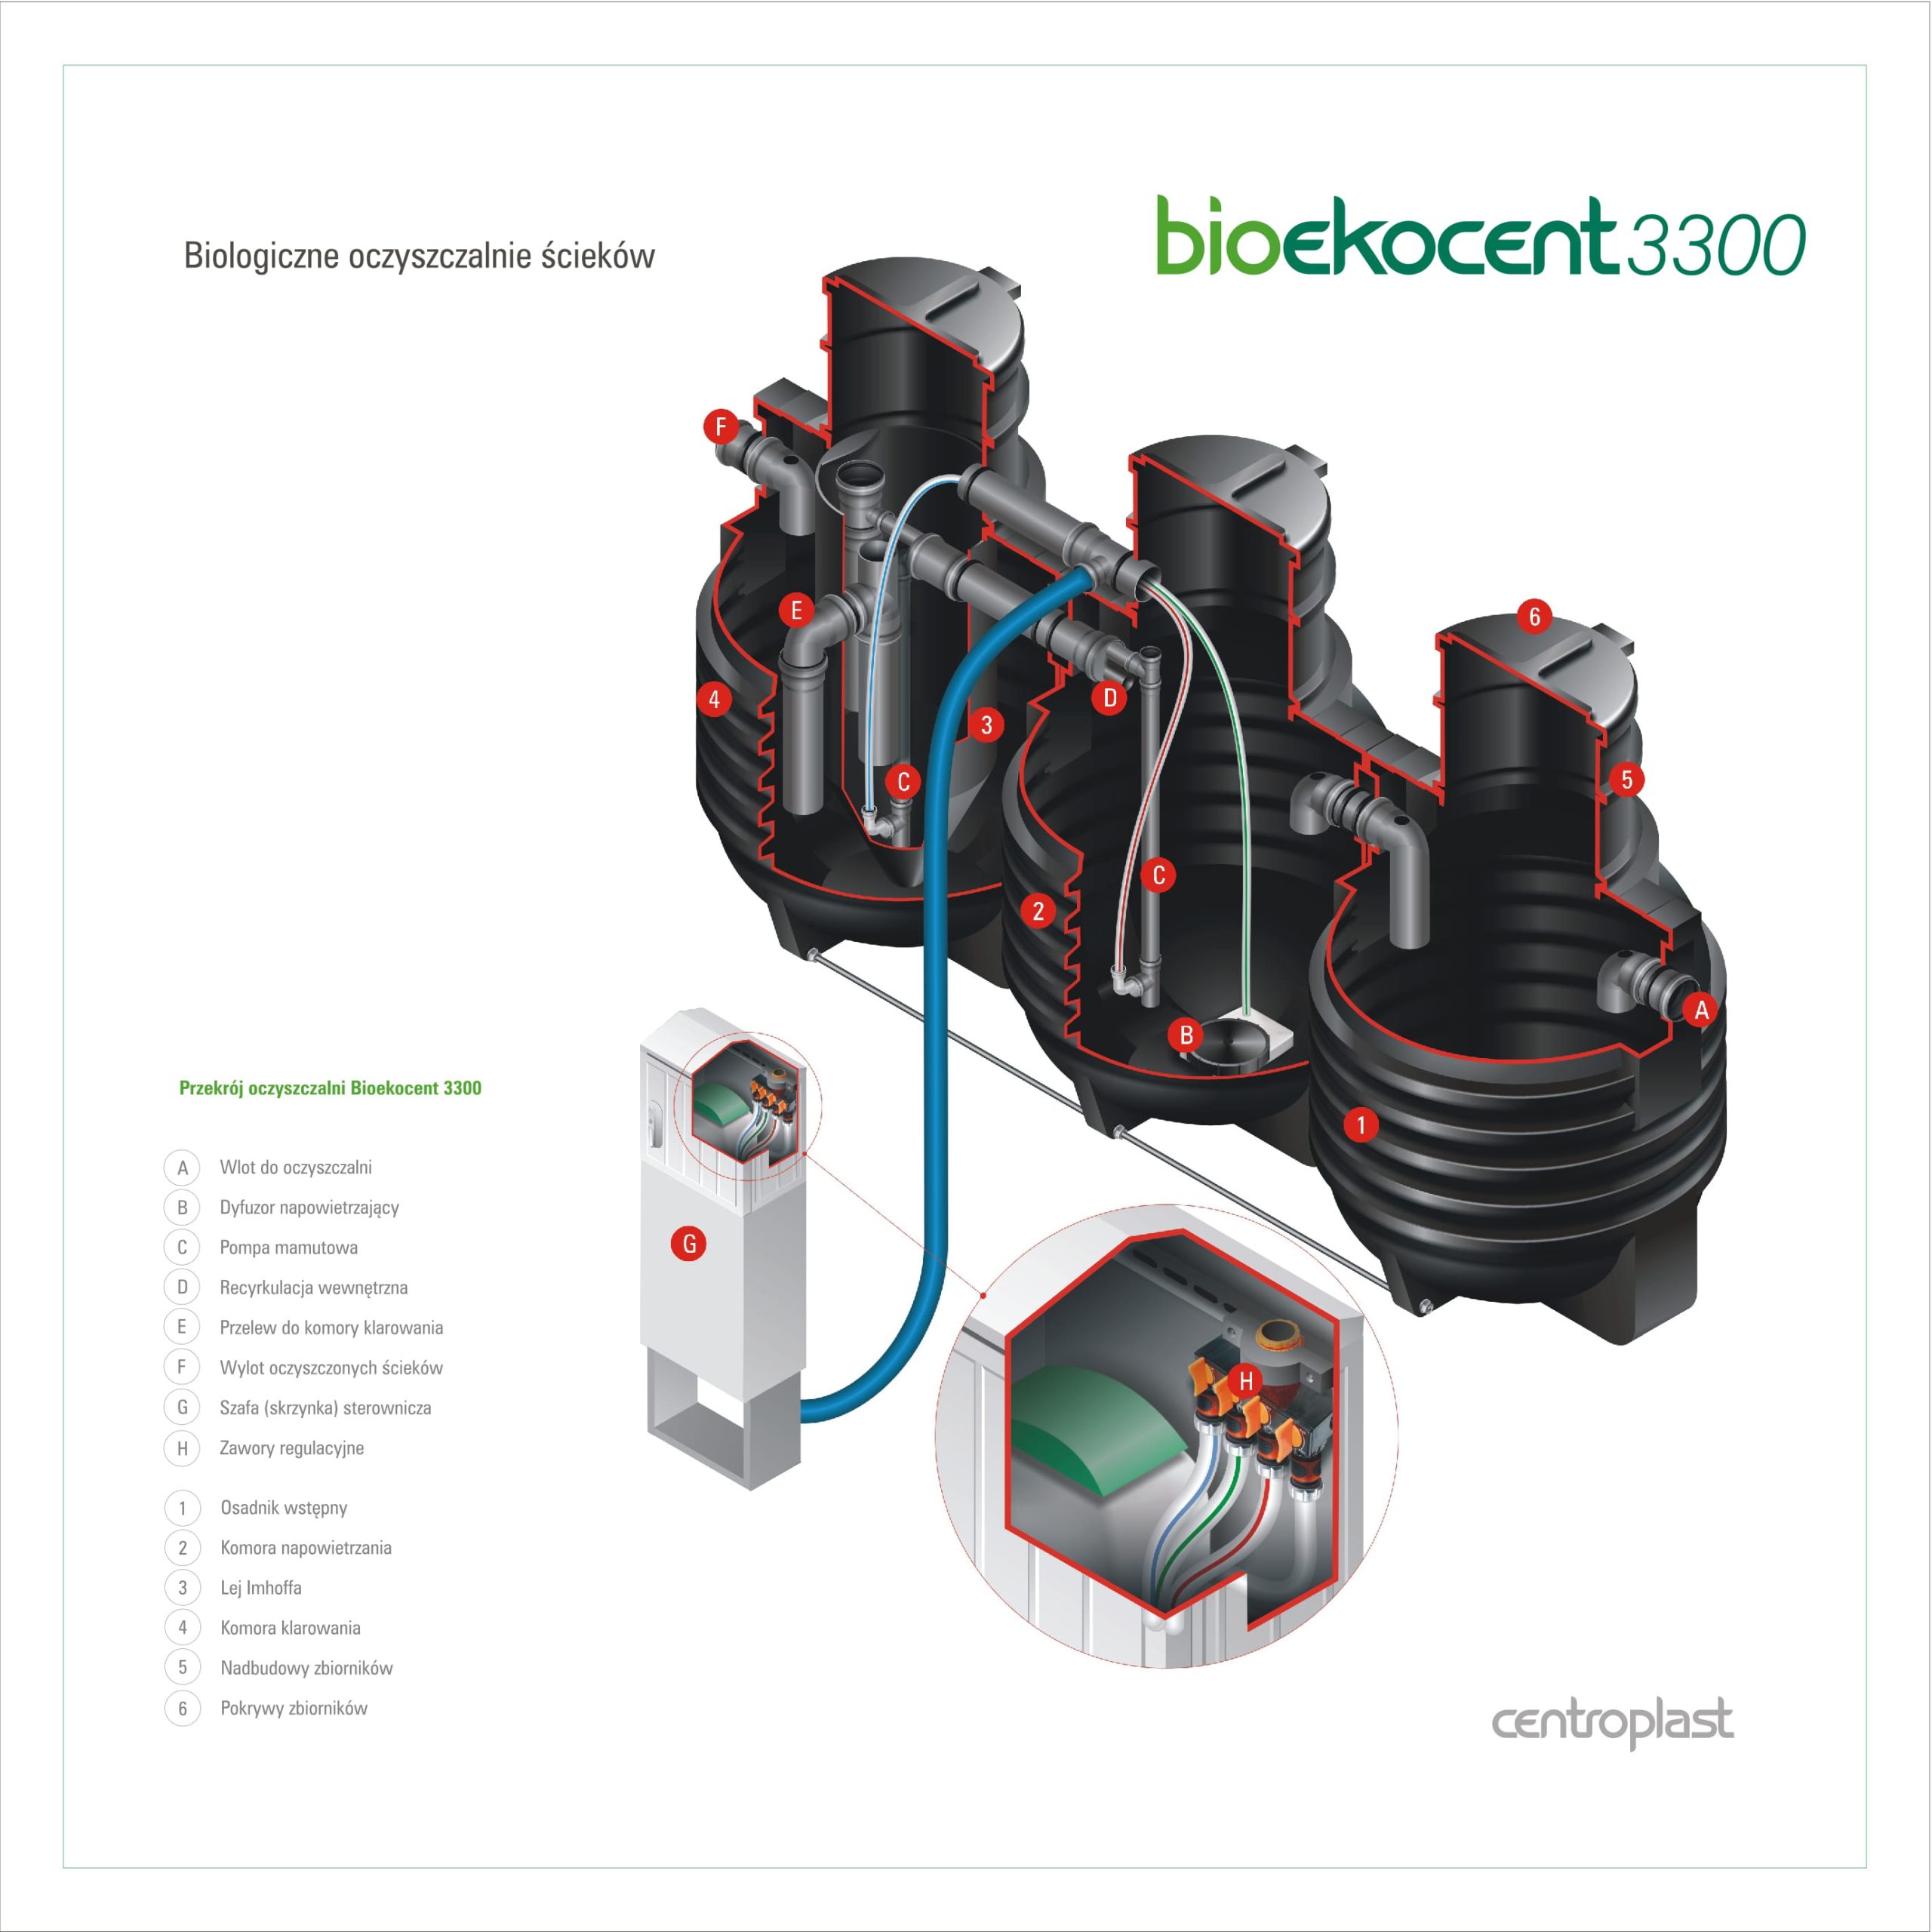 Centroplast Bioekocent 4200 - slajd 0